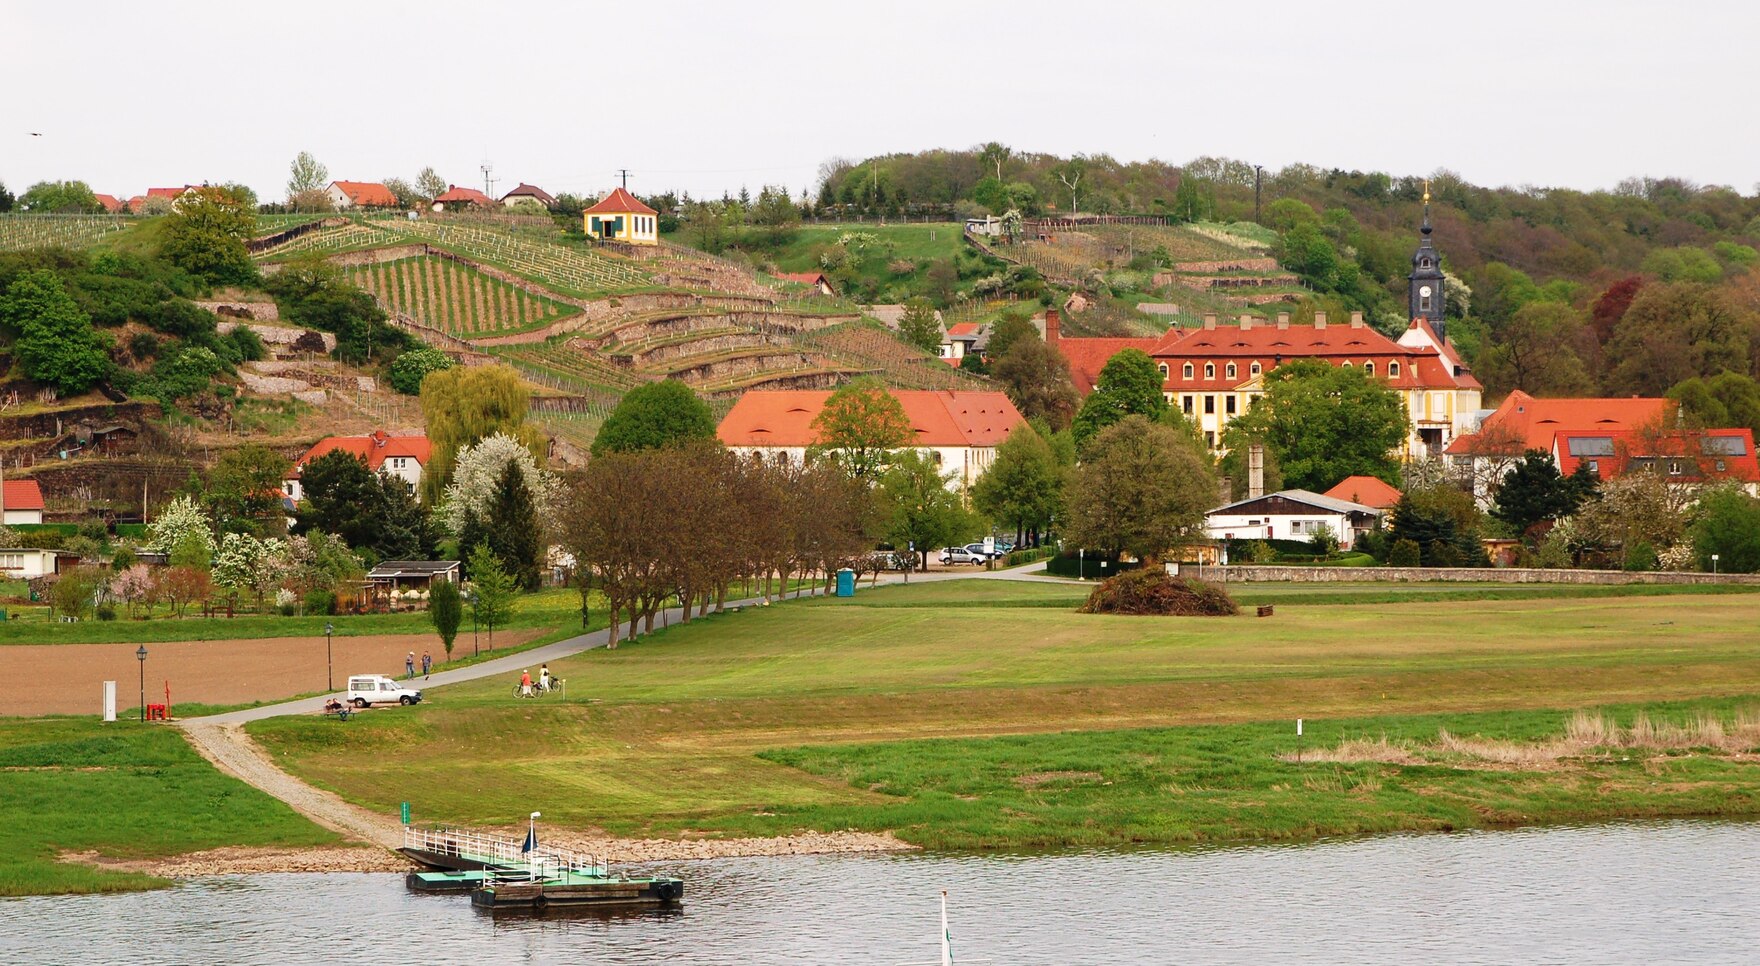 Im Vordergrund die Elbe mit der Fähre, in der Mitte das Schloss in Diesbar-Seußlitz, im Hintergrund die Weinberge